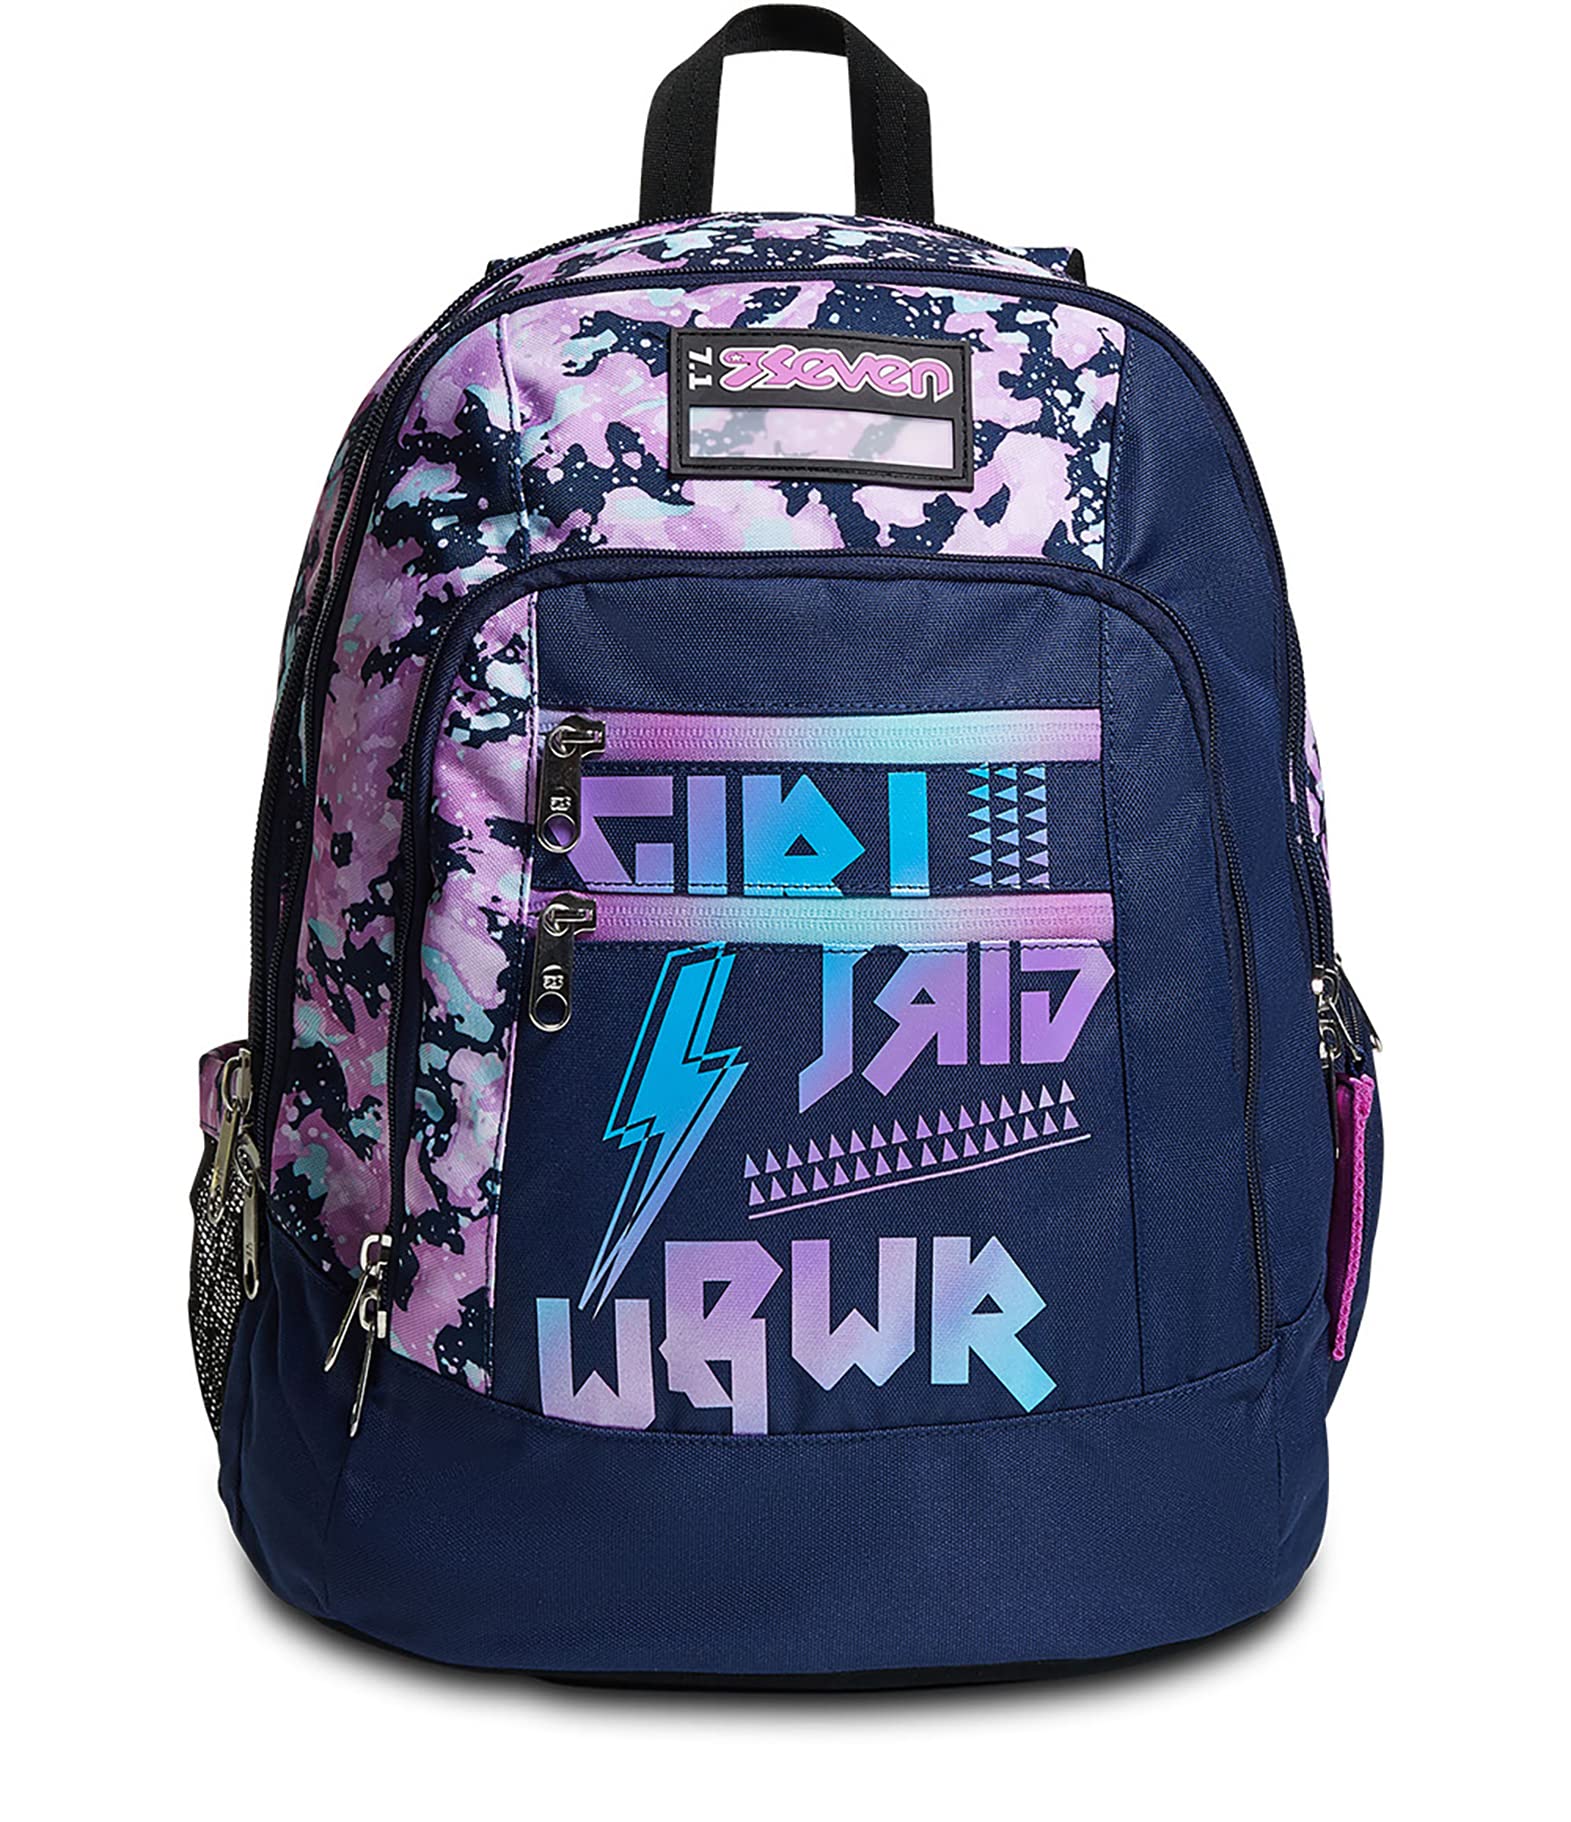 SEVEN Rucksack Advanced, Backpack für Schule, Uni & Freizeit, Geräumige Schultasche für Teenager, Mädchen, Jungen, Gepolsterter Schulranzen; DRAWINGPIN Girl, pink/violett, mit Laptopfach